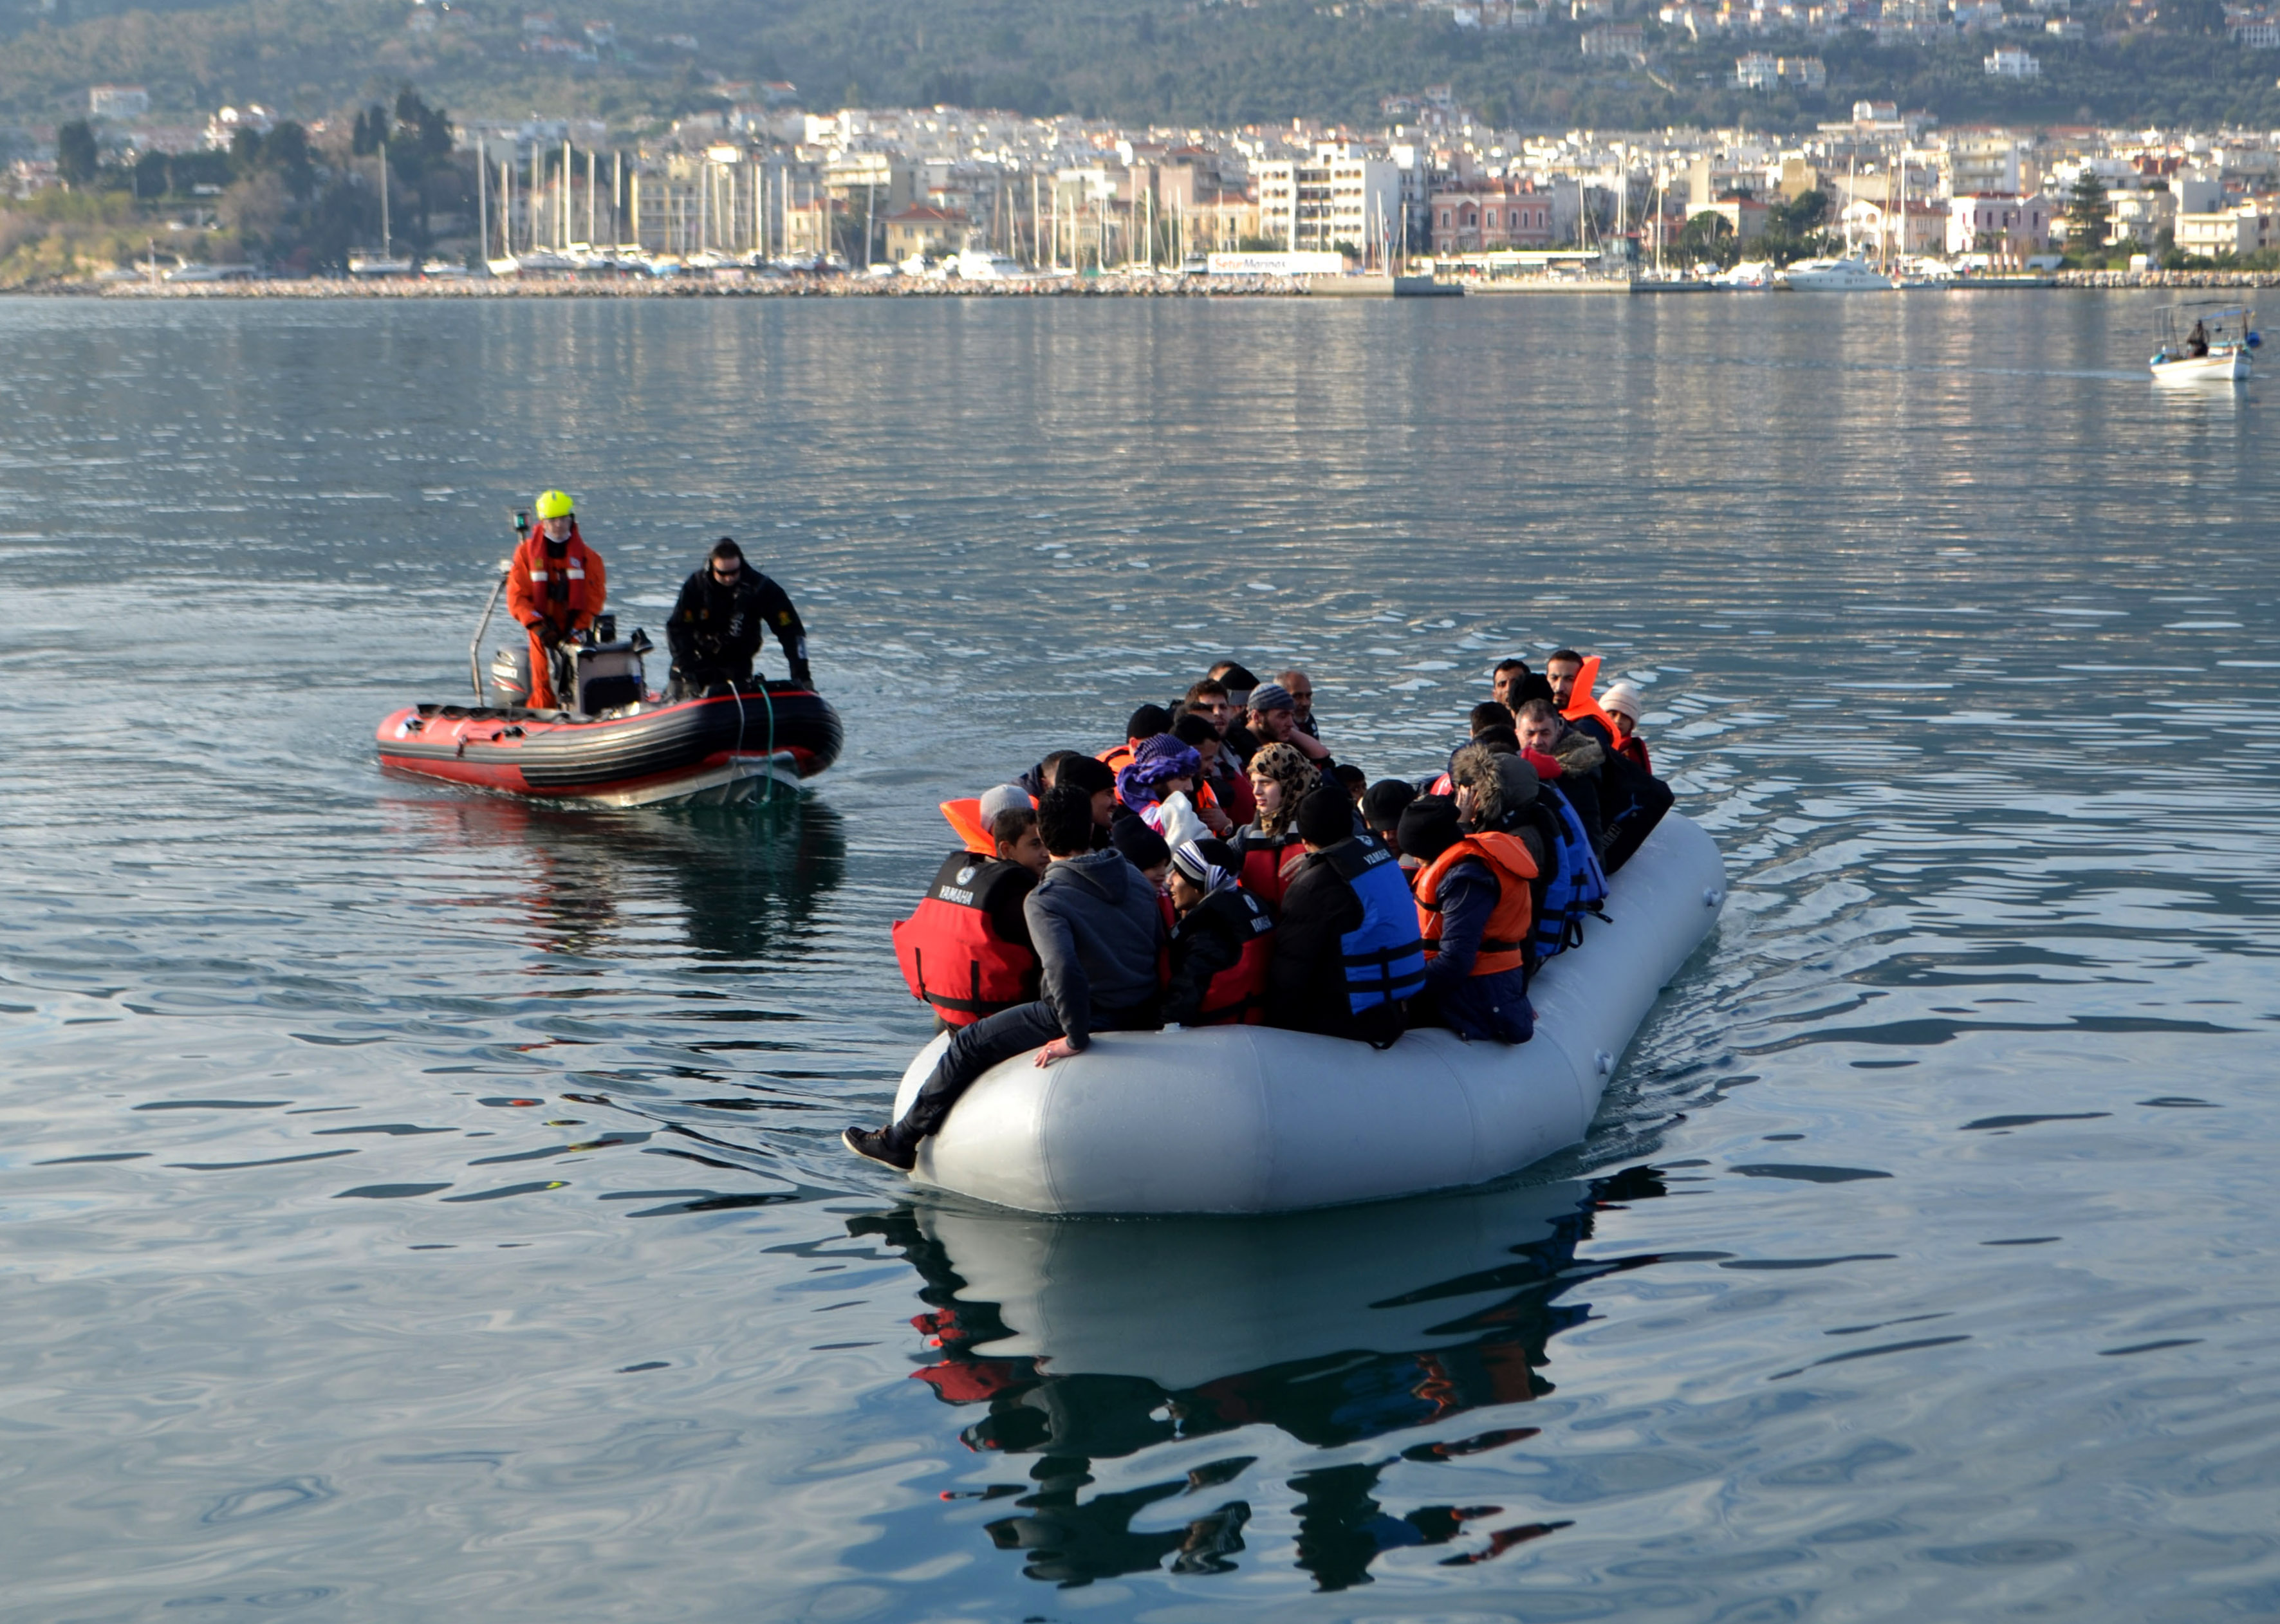 Η Τουρκία αναστέλλει τη συμφωνία με την Ελλάδα για τους πρόσφυγες σε αντίποινα για τους 8 τούρκους αξιωματικούς